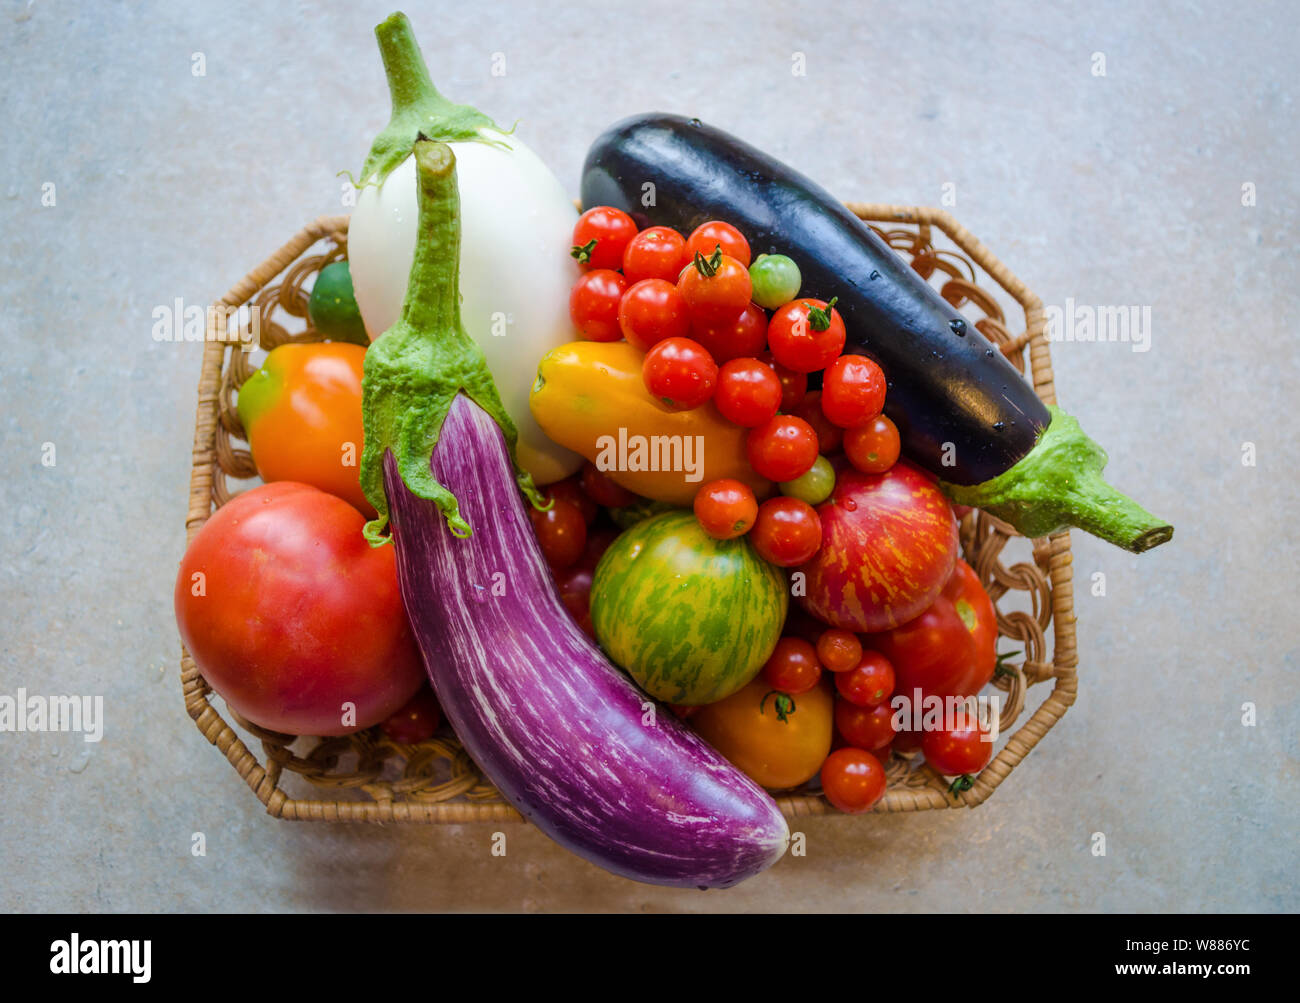 Un cesto pieno di fresche e mature verdure organiche - bianco e viola melanzane, pomodori arancione, pomodorini e pomodori rossi Foto Stock